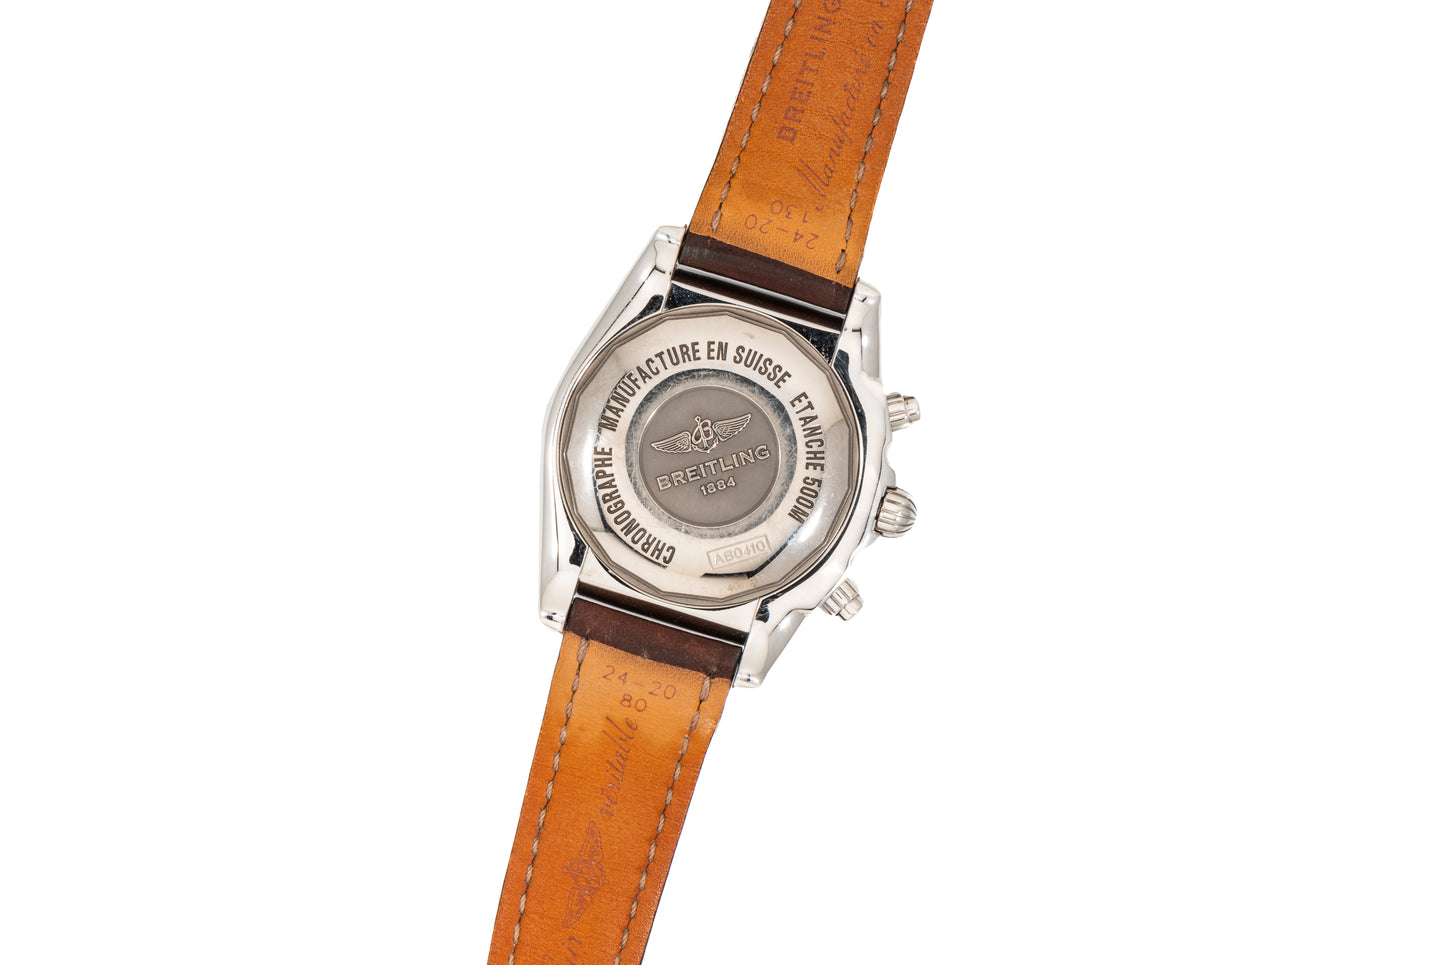 Breitling Chronomat GMT